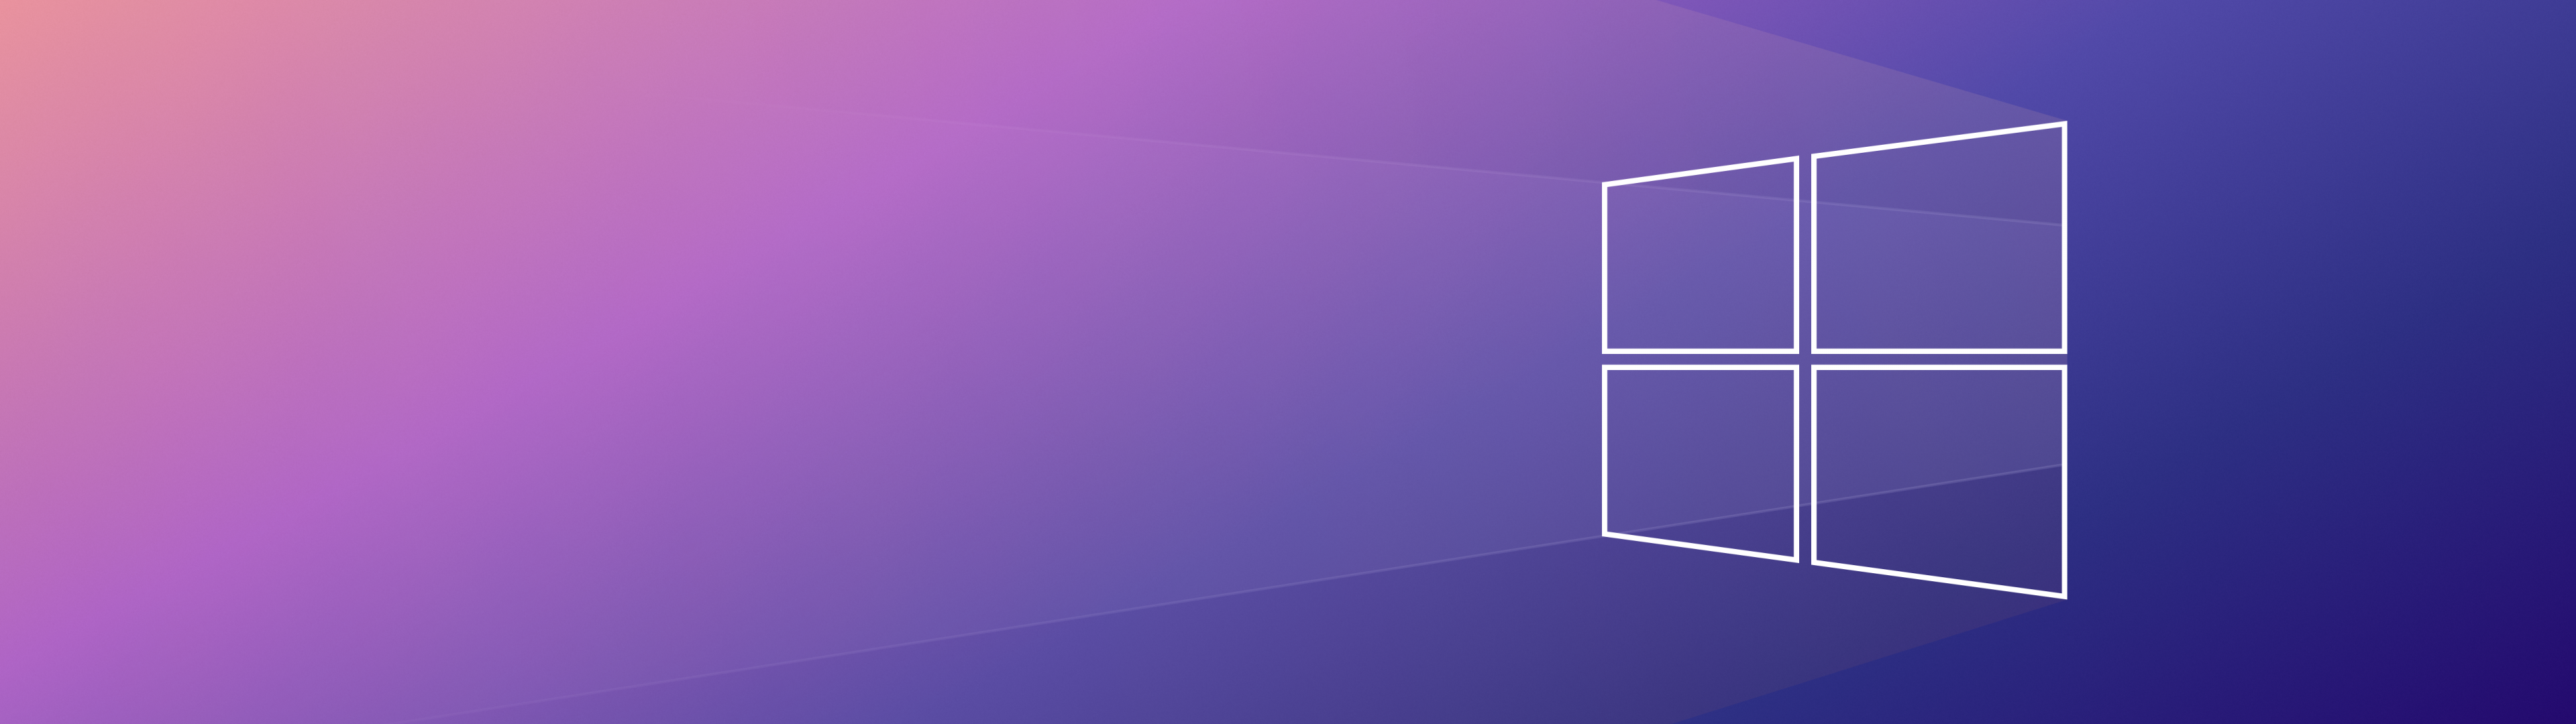 Cùng khám phá những hình nền Windows 10 4K chất lượng cao với độ phân giải sắc nét đến từng chi tiết. Hình ảnh sống động và rực rỡ màu sắc sẽ giúp bạn trang trí màn hình máy tính thật lung linh.